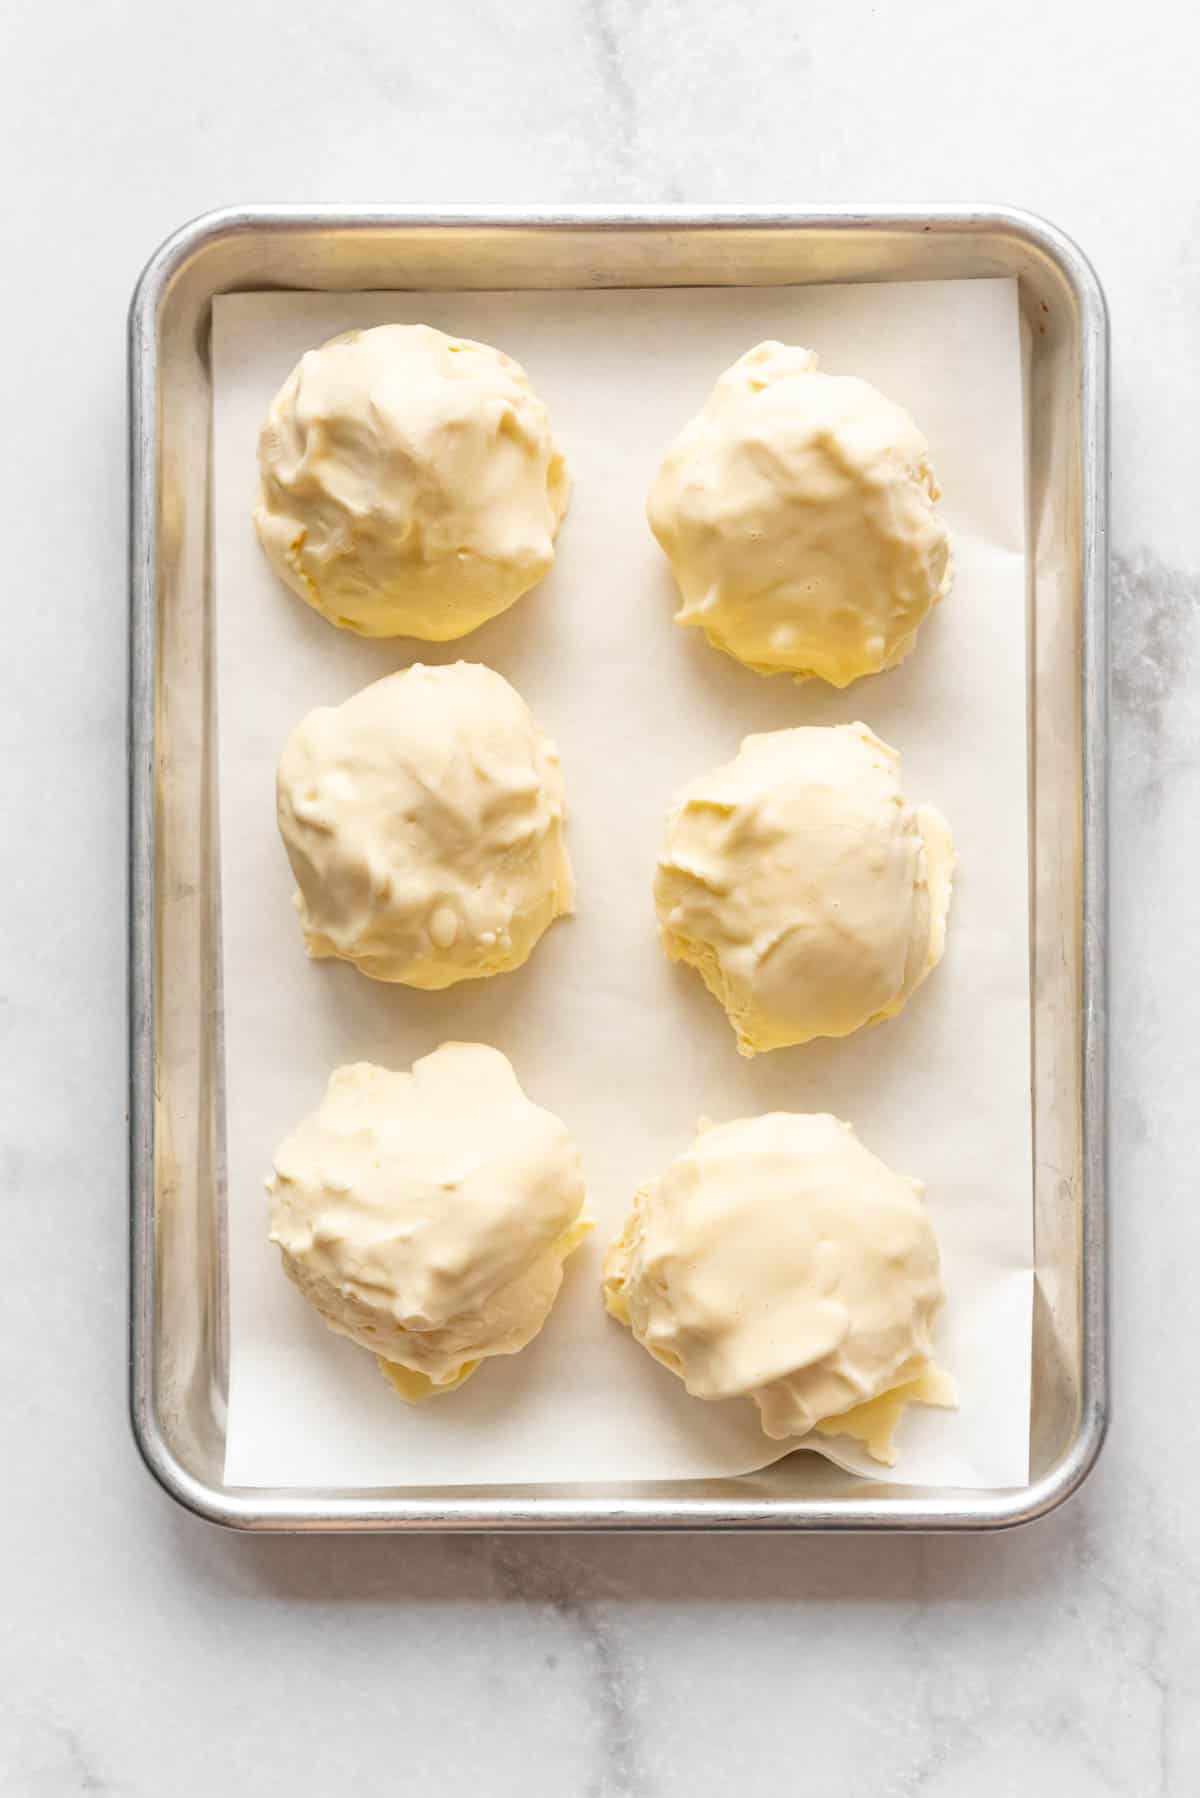 hard balls of scooped vanilla ice cream on a baking sheet.